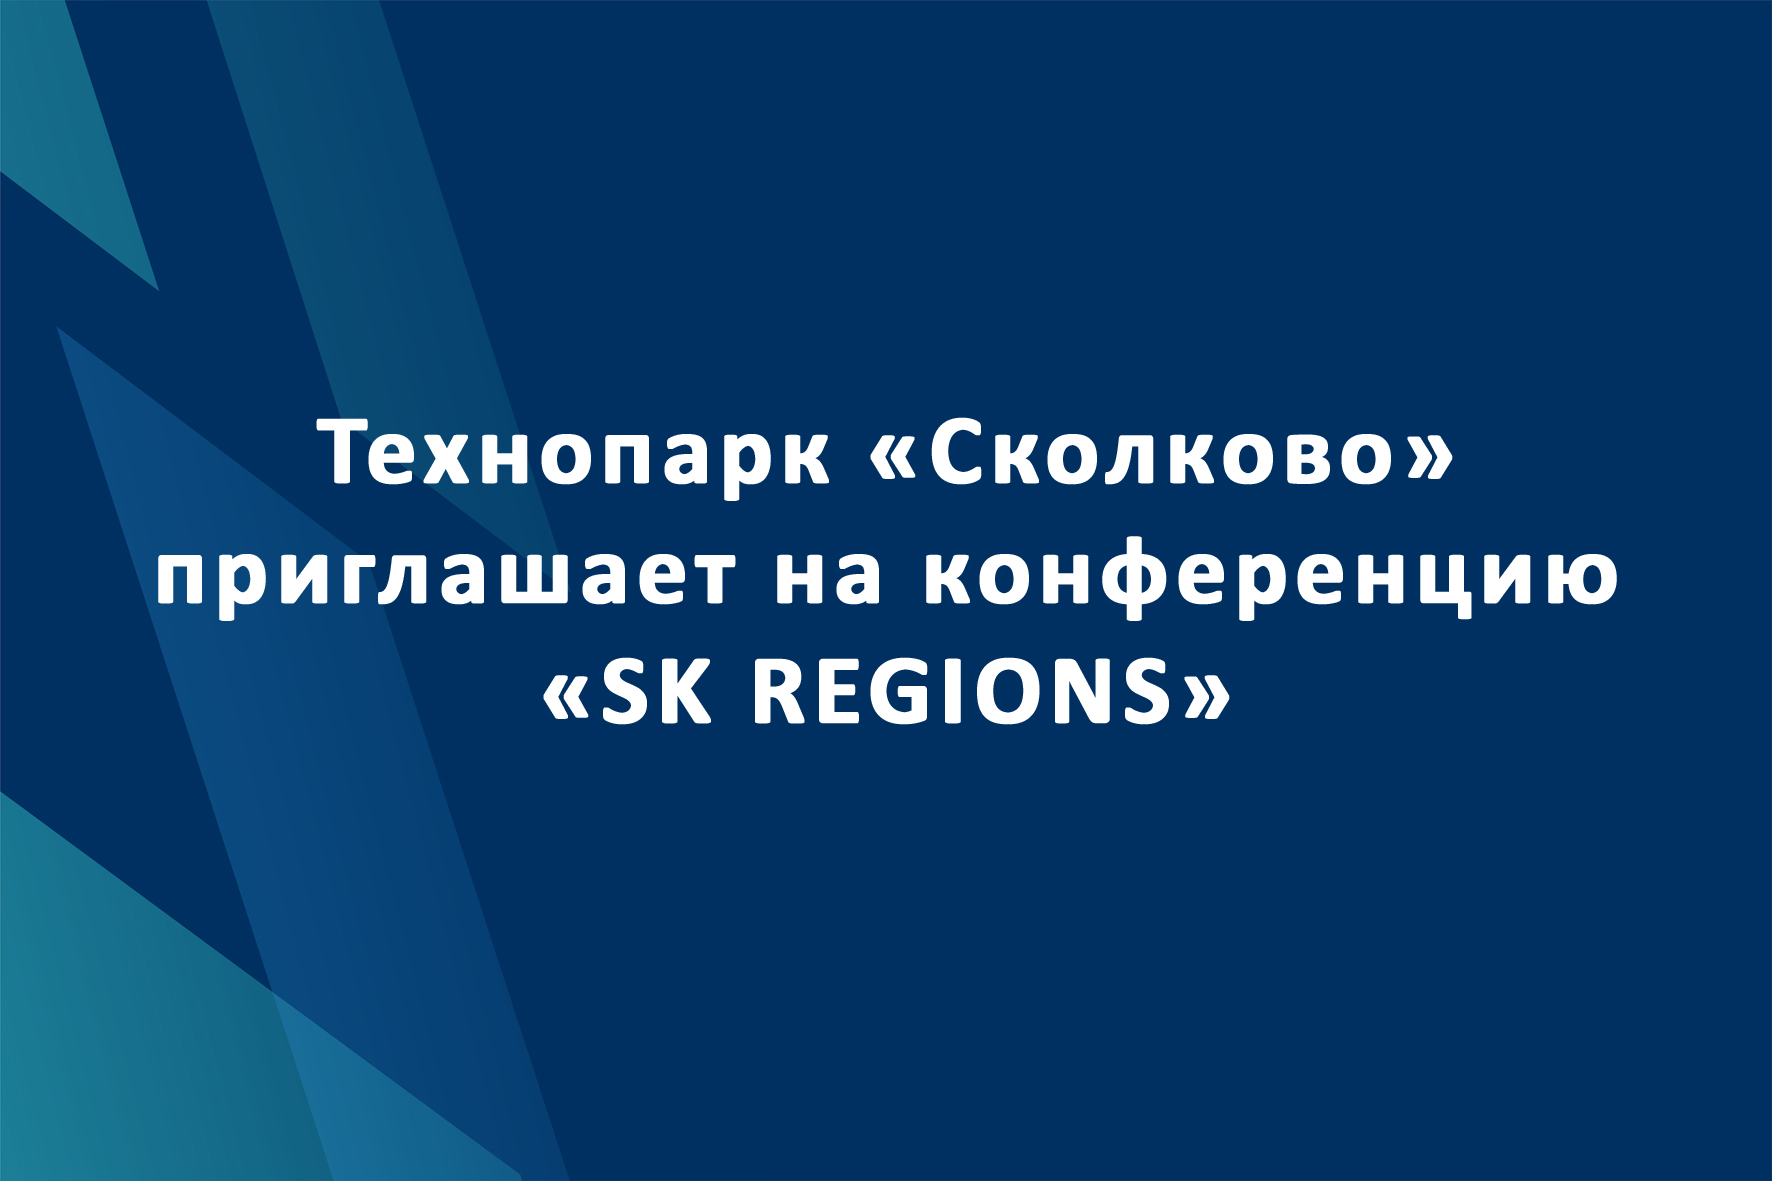 Технопарк «Сколково» приглашает на конференцию «SK REGIONS»